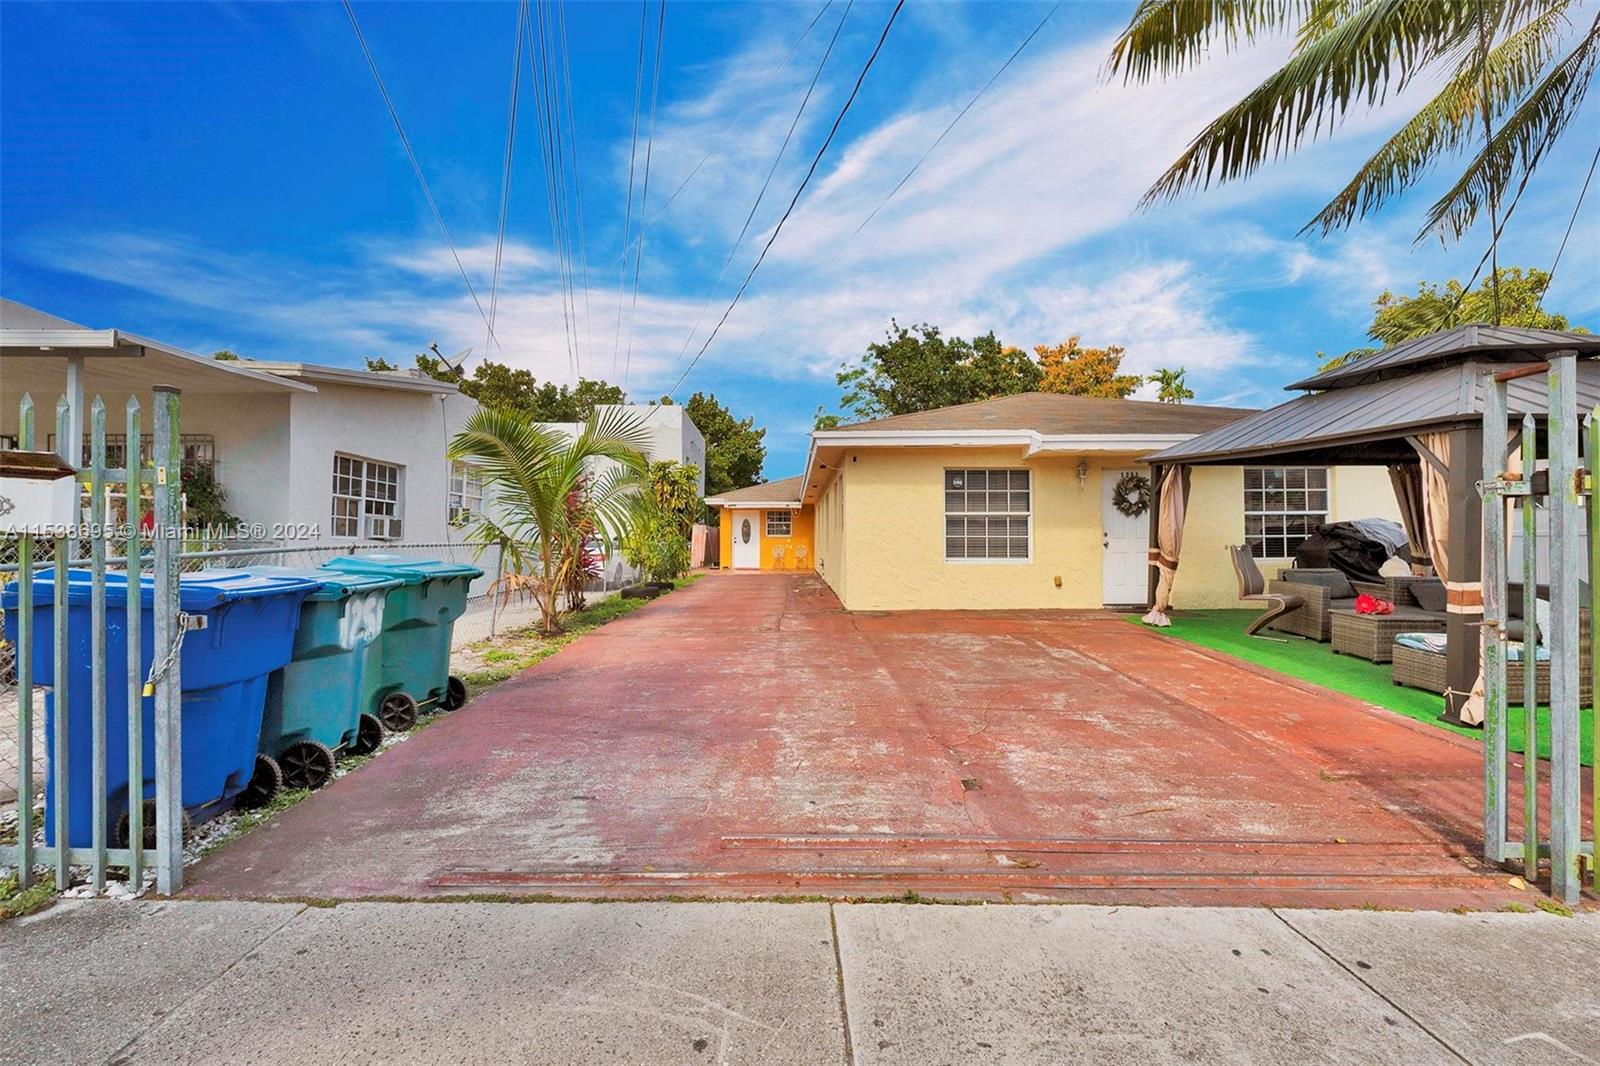 Rental Property at 1251 Nw 27th St St, Miami, Broward County, Florida -  - $750,000 MO.